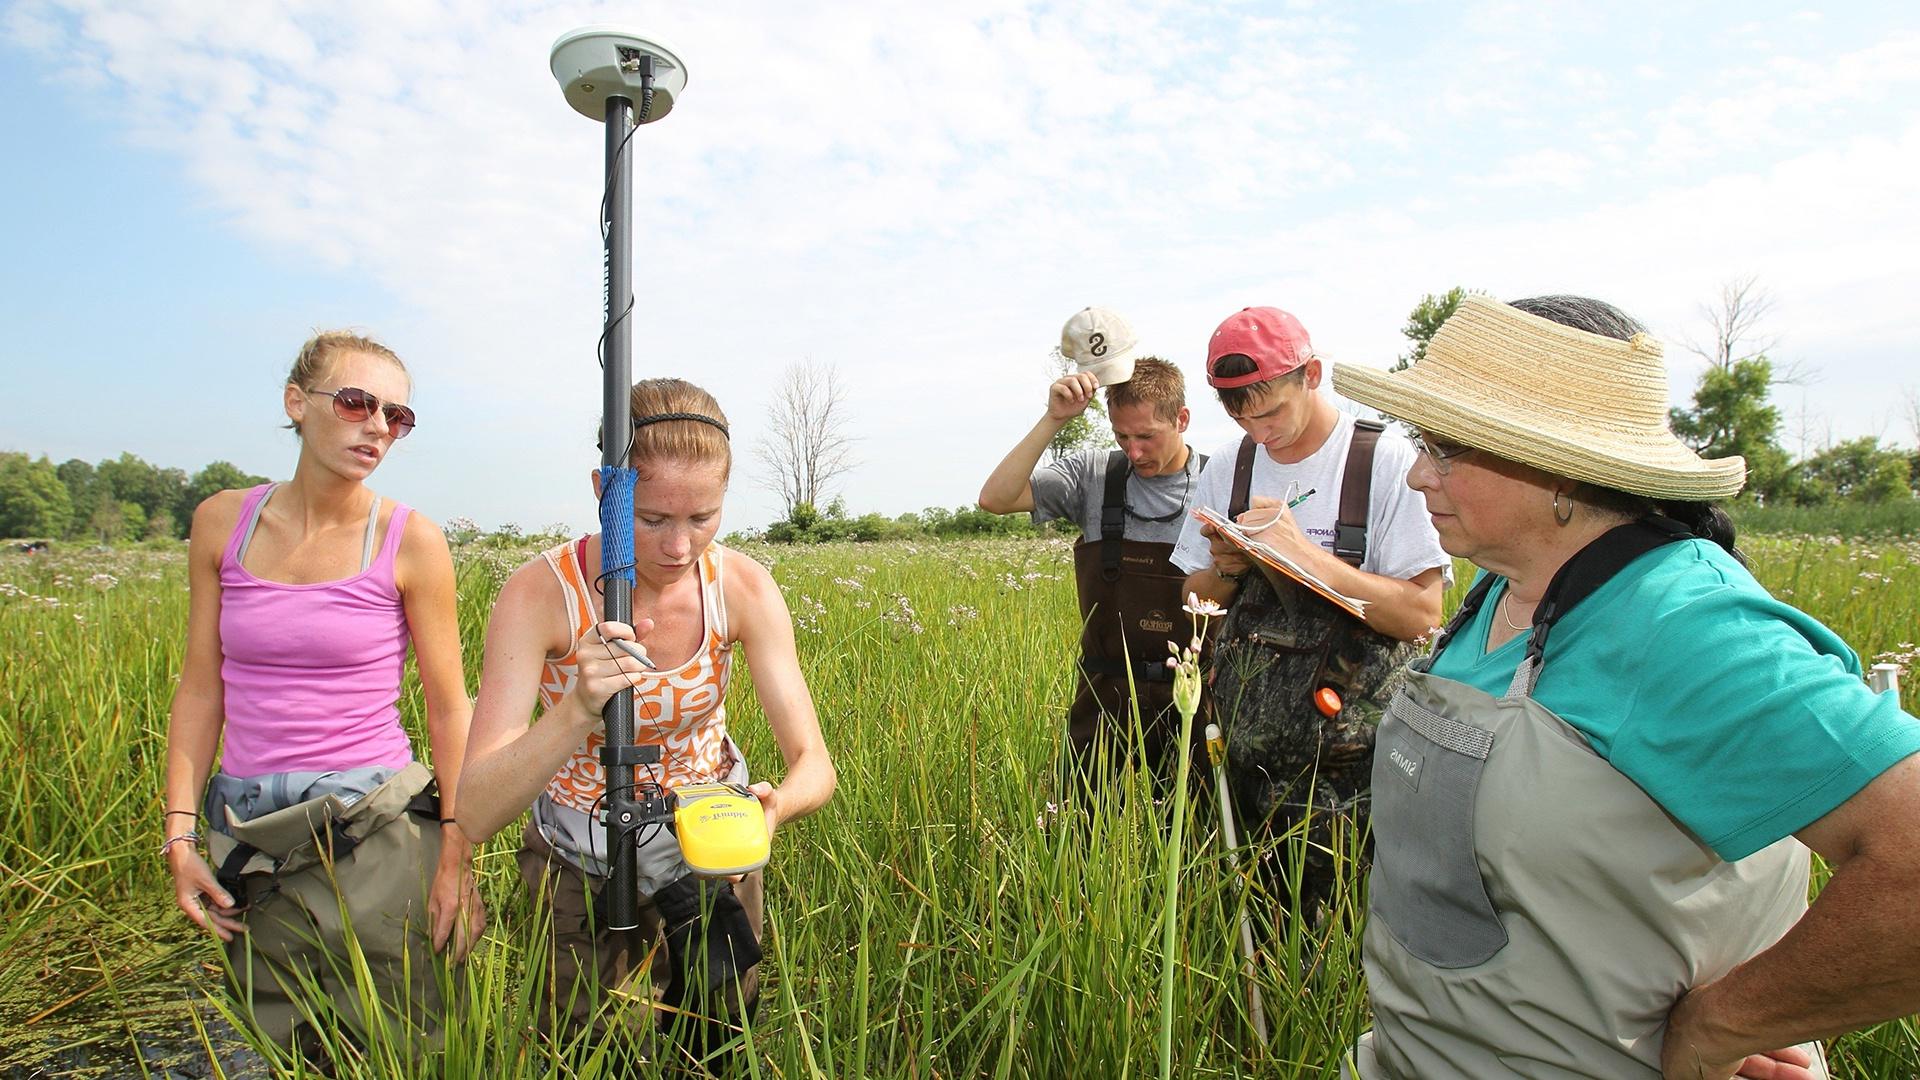 俄亥俄州的淡水沼泽由BGSU生物学专业的学生用GPS定位器和海洋样本收集工具进行探索.